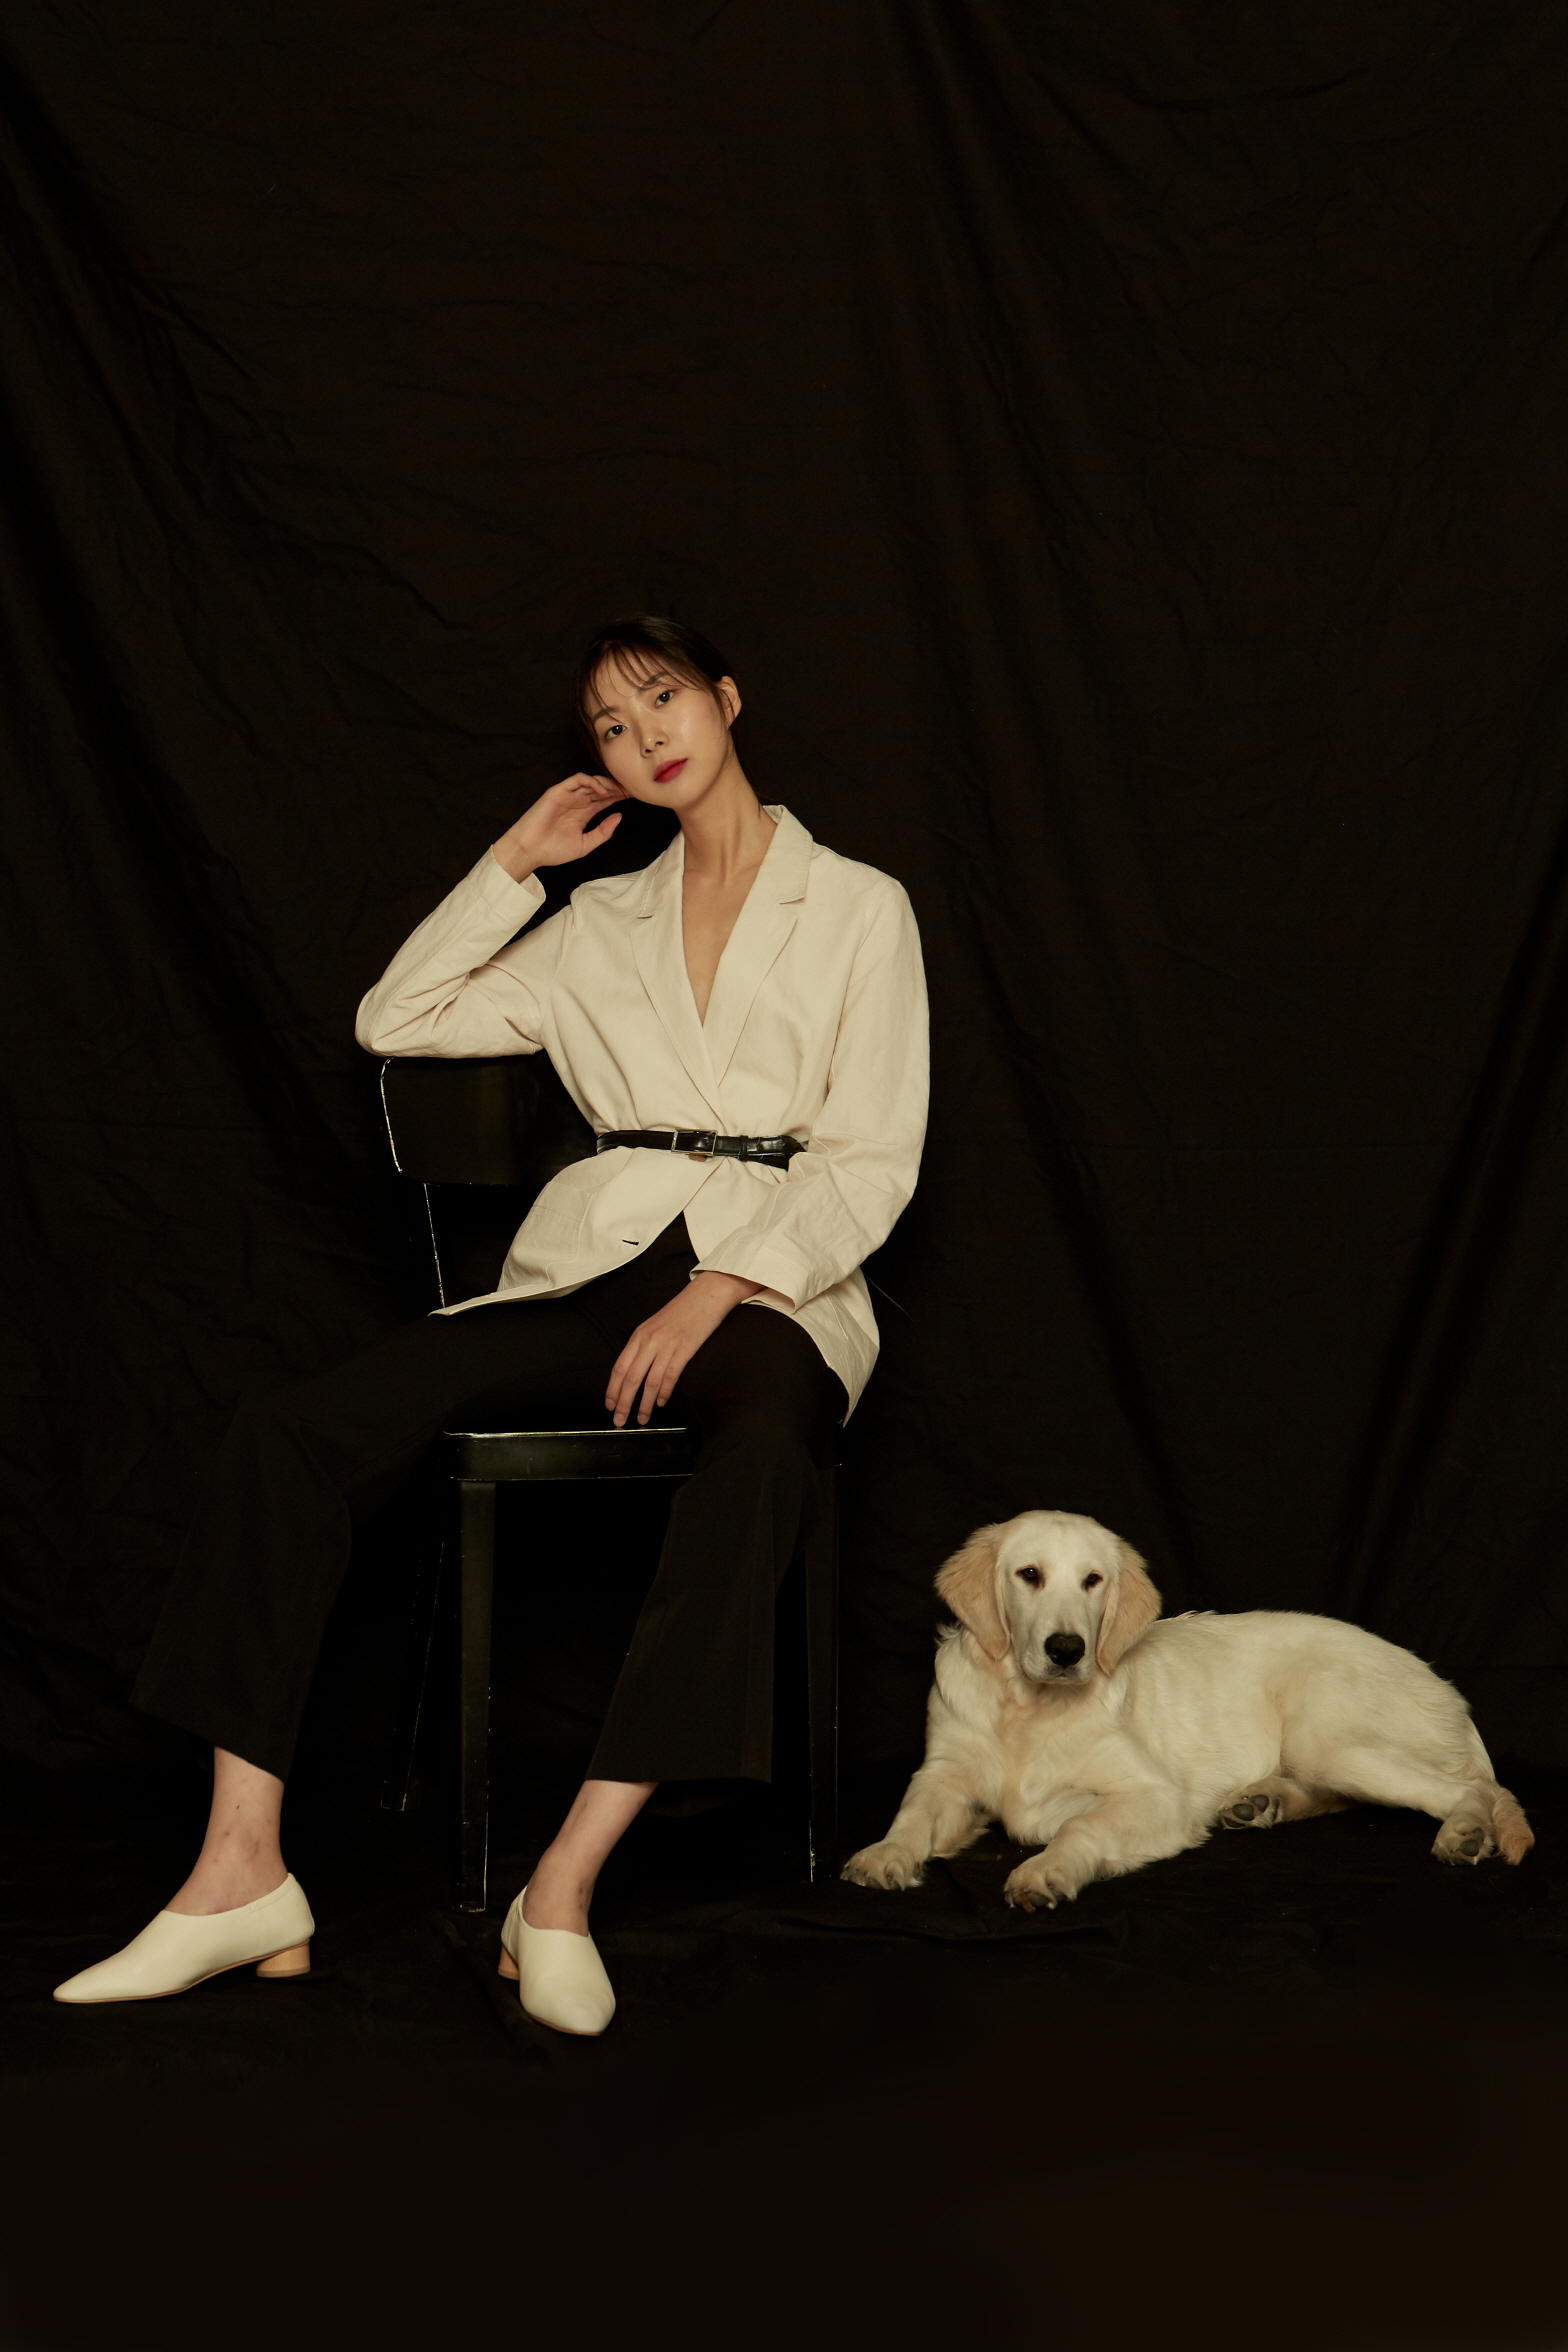 [화보] 모델 김예림, 모노톤의 시크한 분위기로 시선 집중 